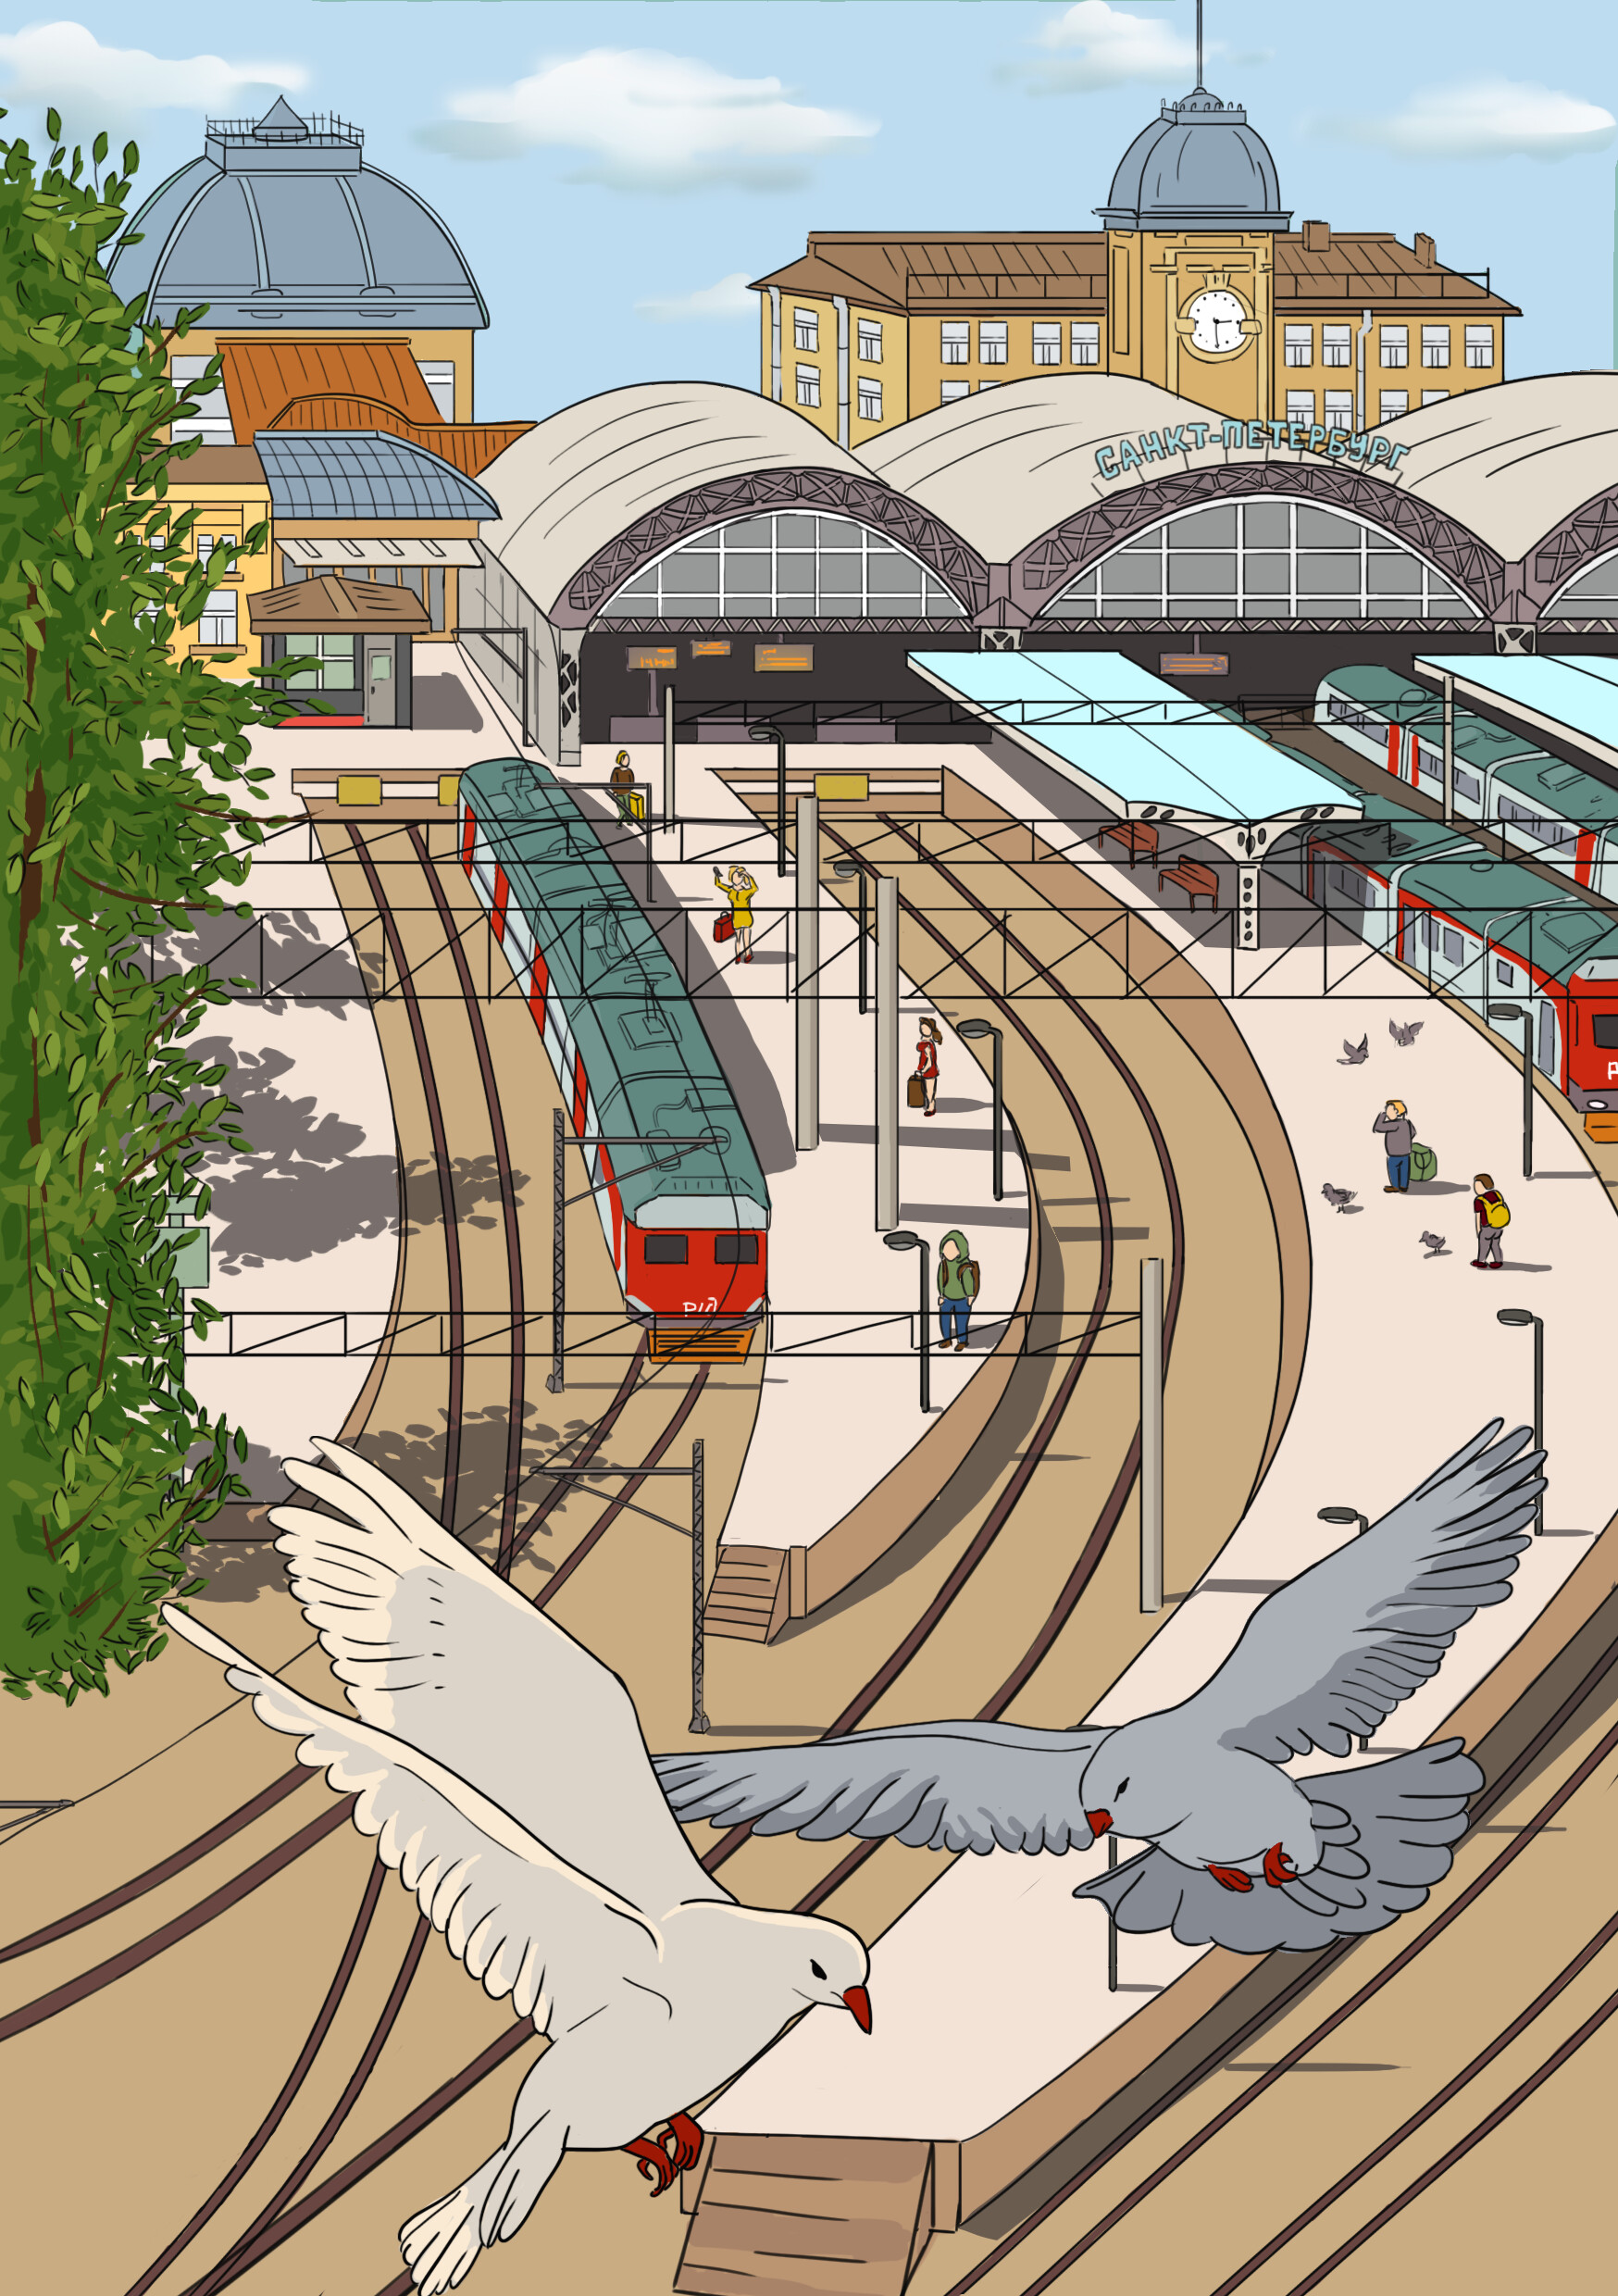 ArtStation - Cartoon train station